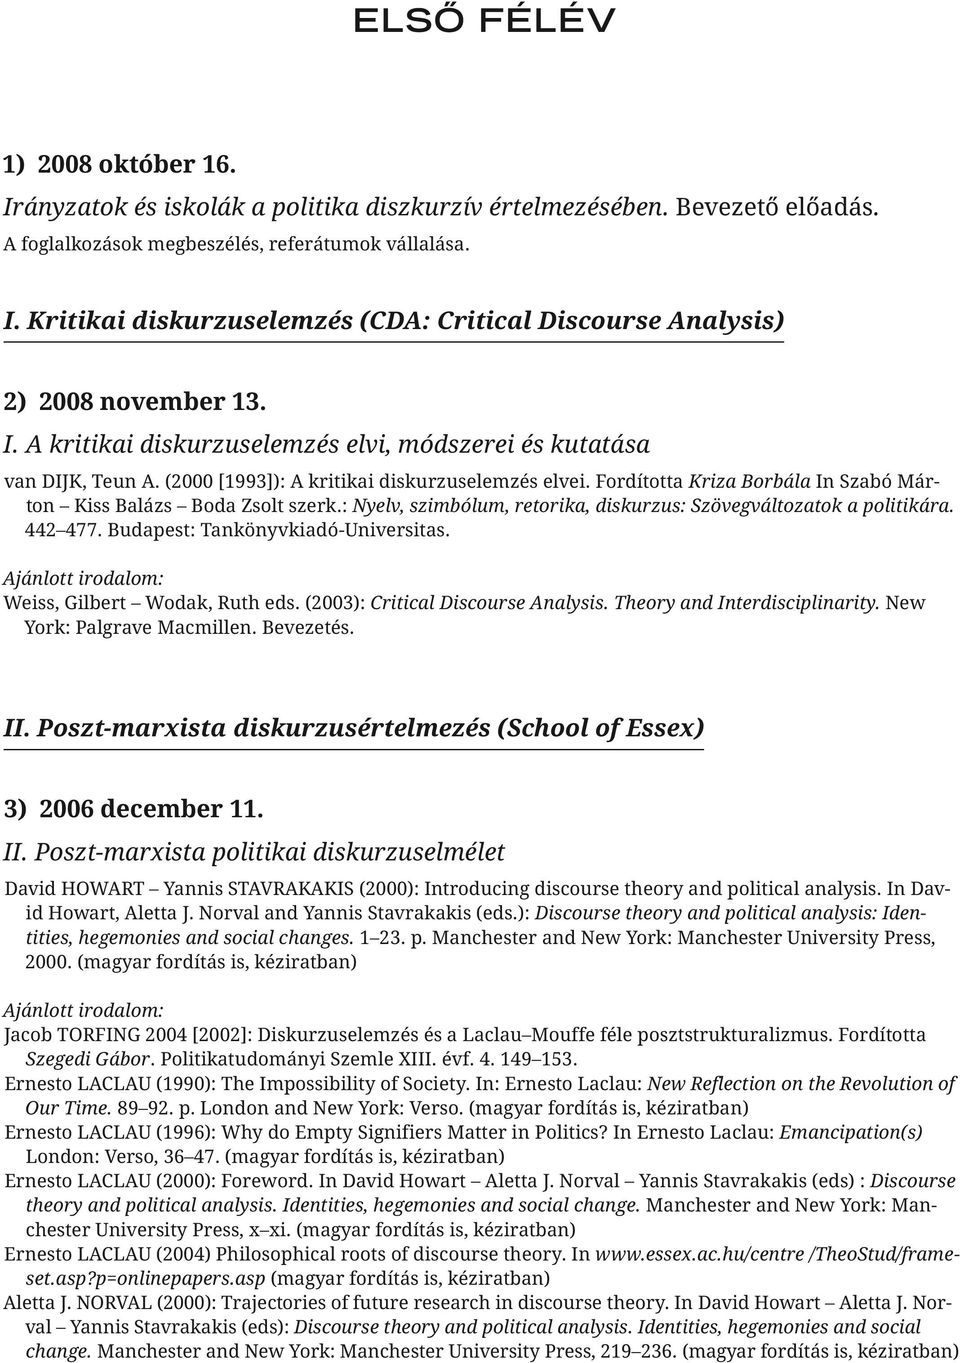 : Nyelv, szimbólum, retorika, diskurzus: Szövegváltozatok a politikára. 442 477. Budapest: Tankönyvkiadó-Universitas. Weiss, Gilbert Wodak, Ruth eds. (2003): Critical Discourse Analysis.